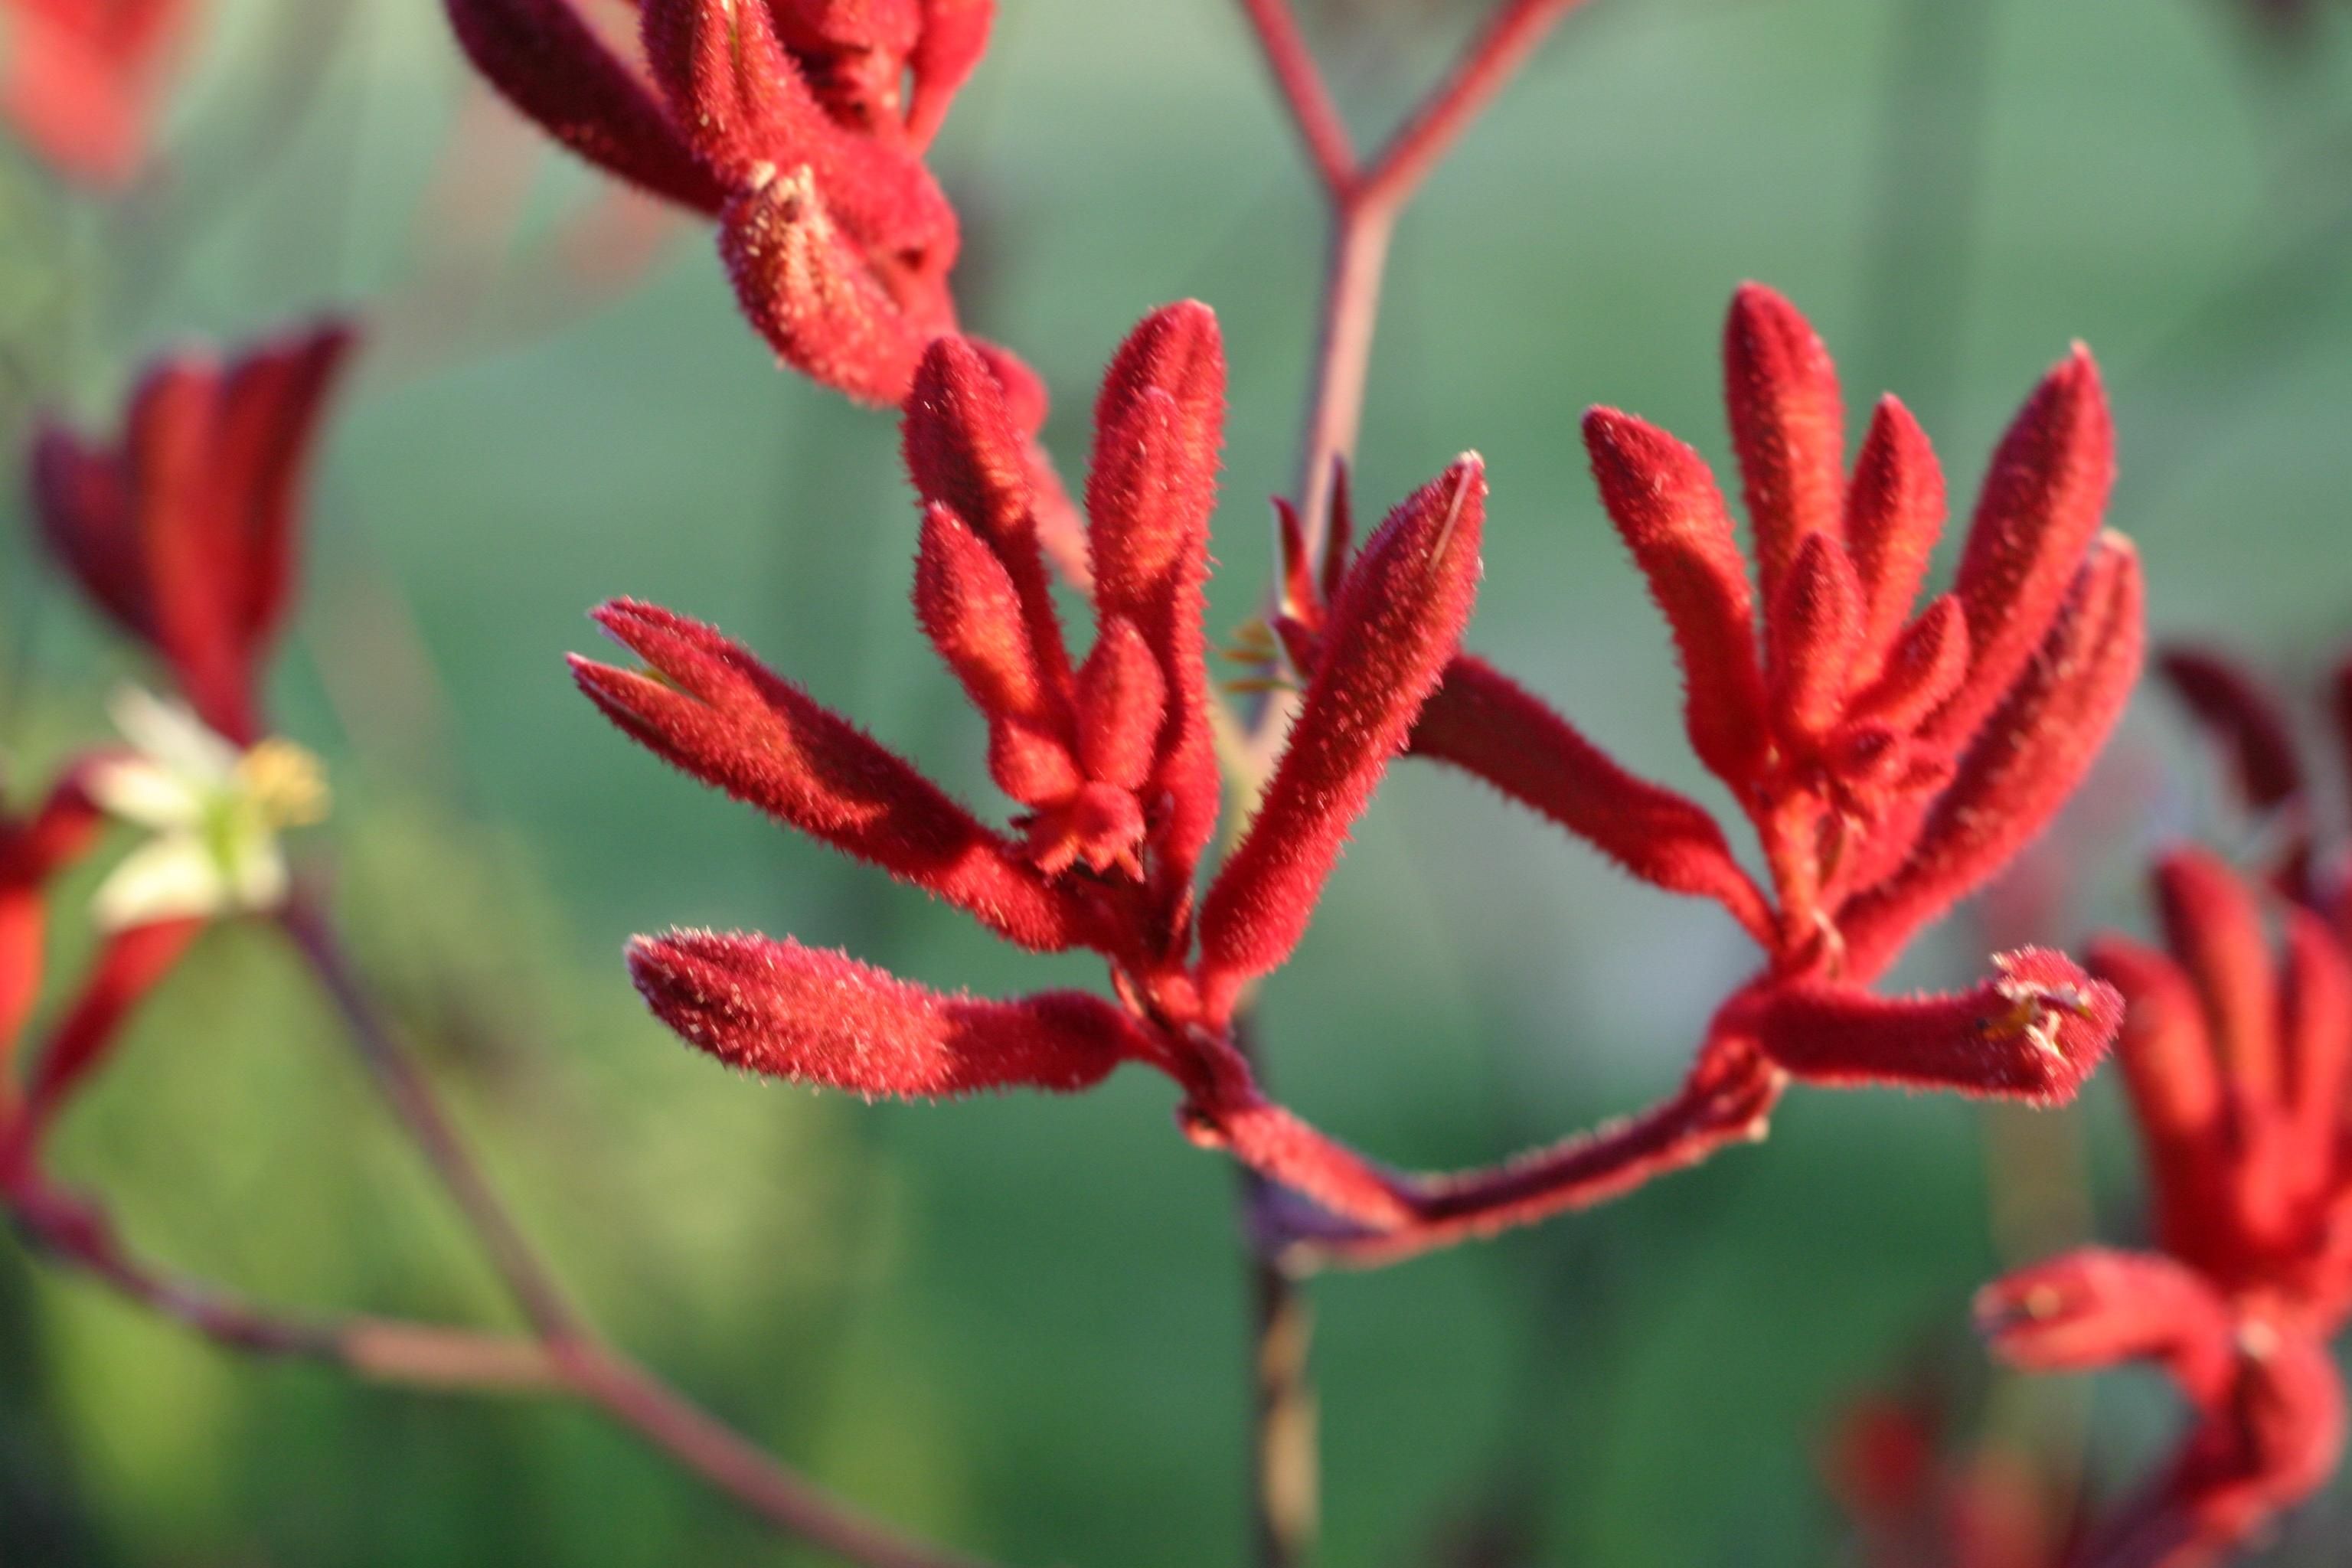 File:Red desert flowers.jpg - Wikimedia Commons